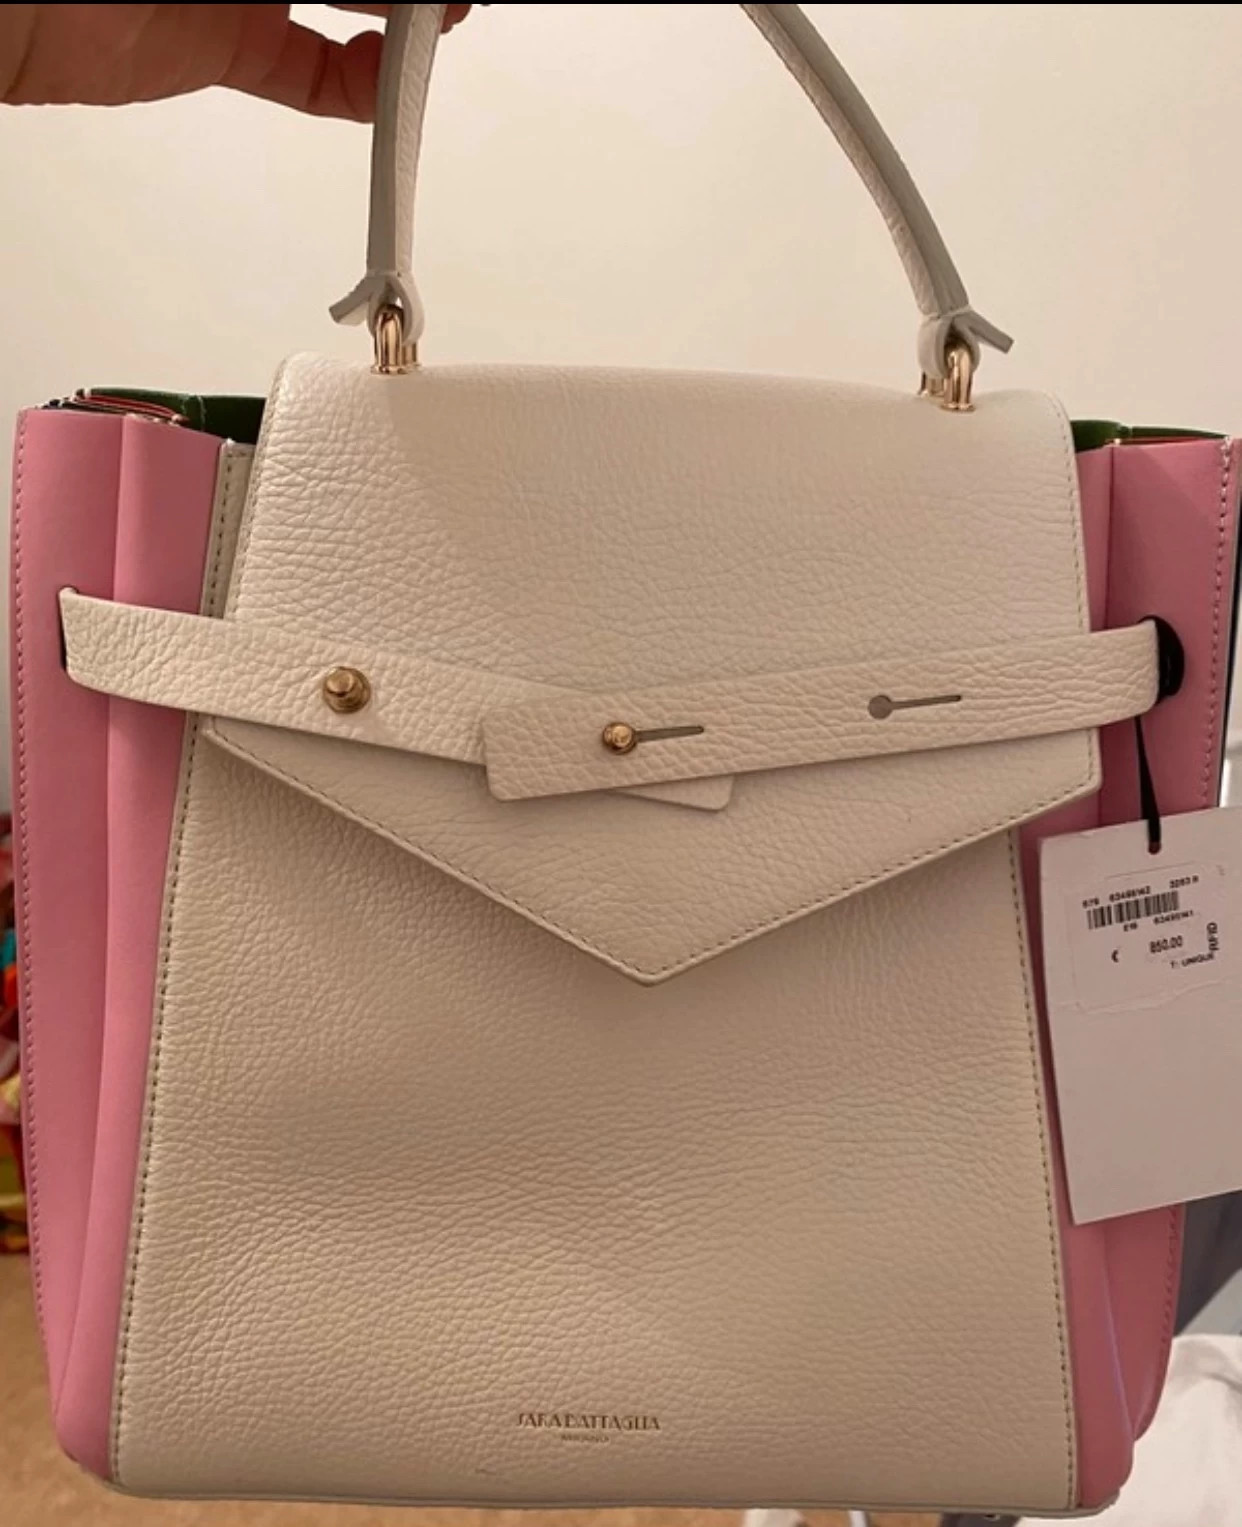 Voici le sac de luxe le plus recherché sur Vinted en 2022 : Femme